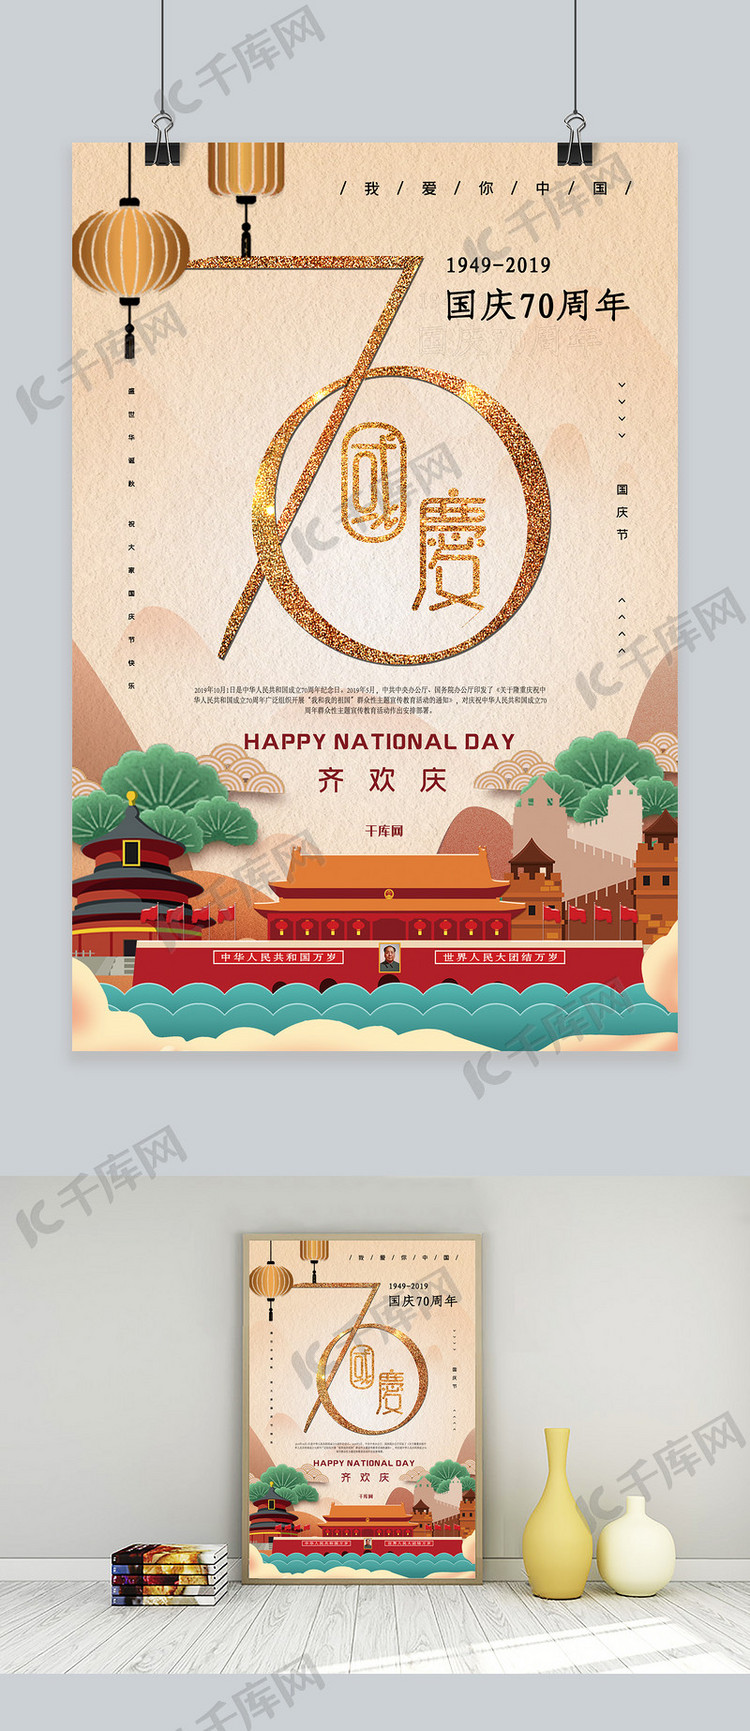 新中国成立70周年国庆节宣传海报